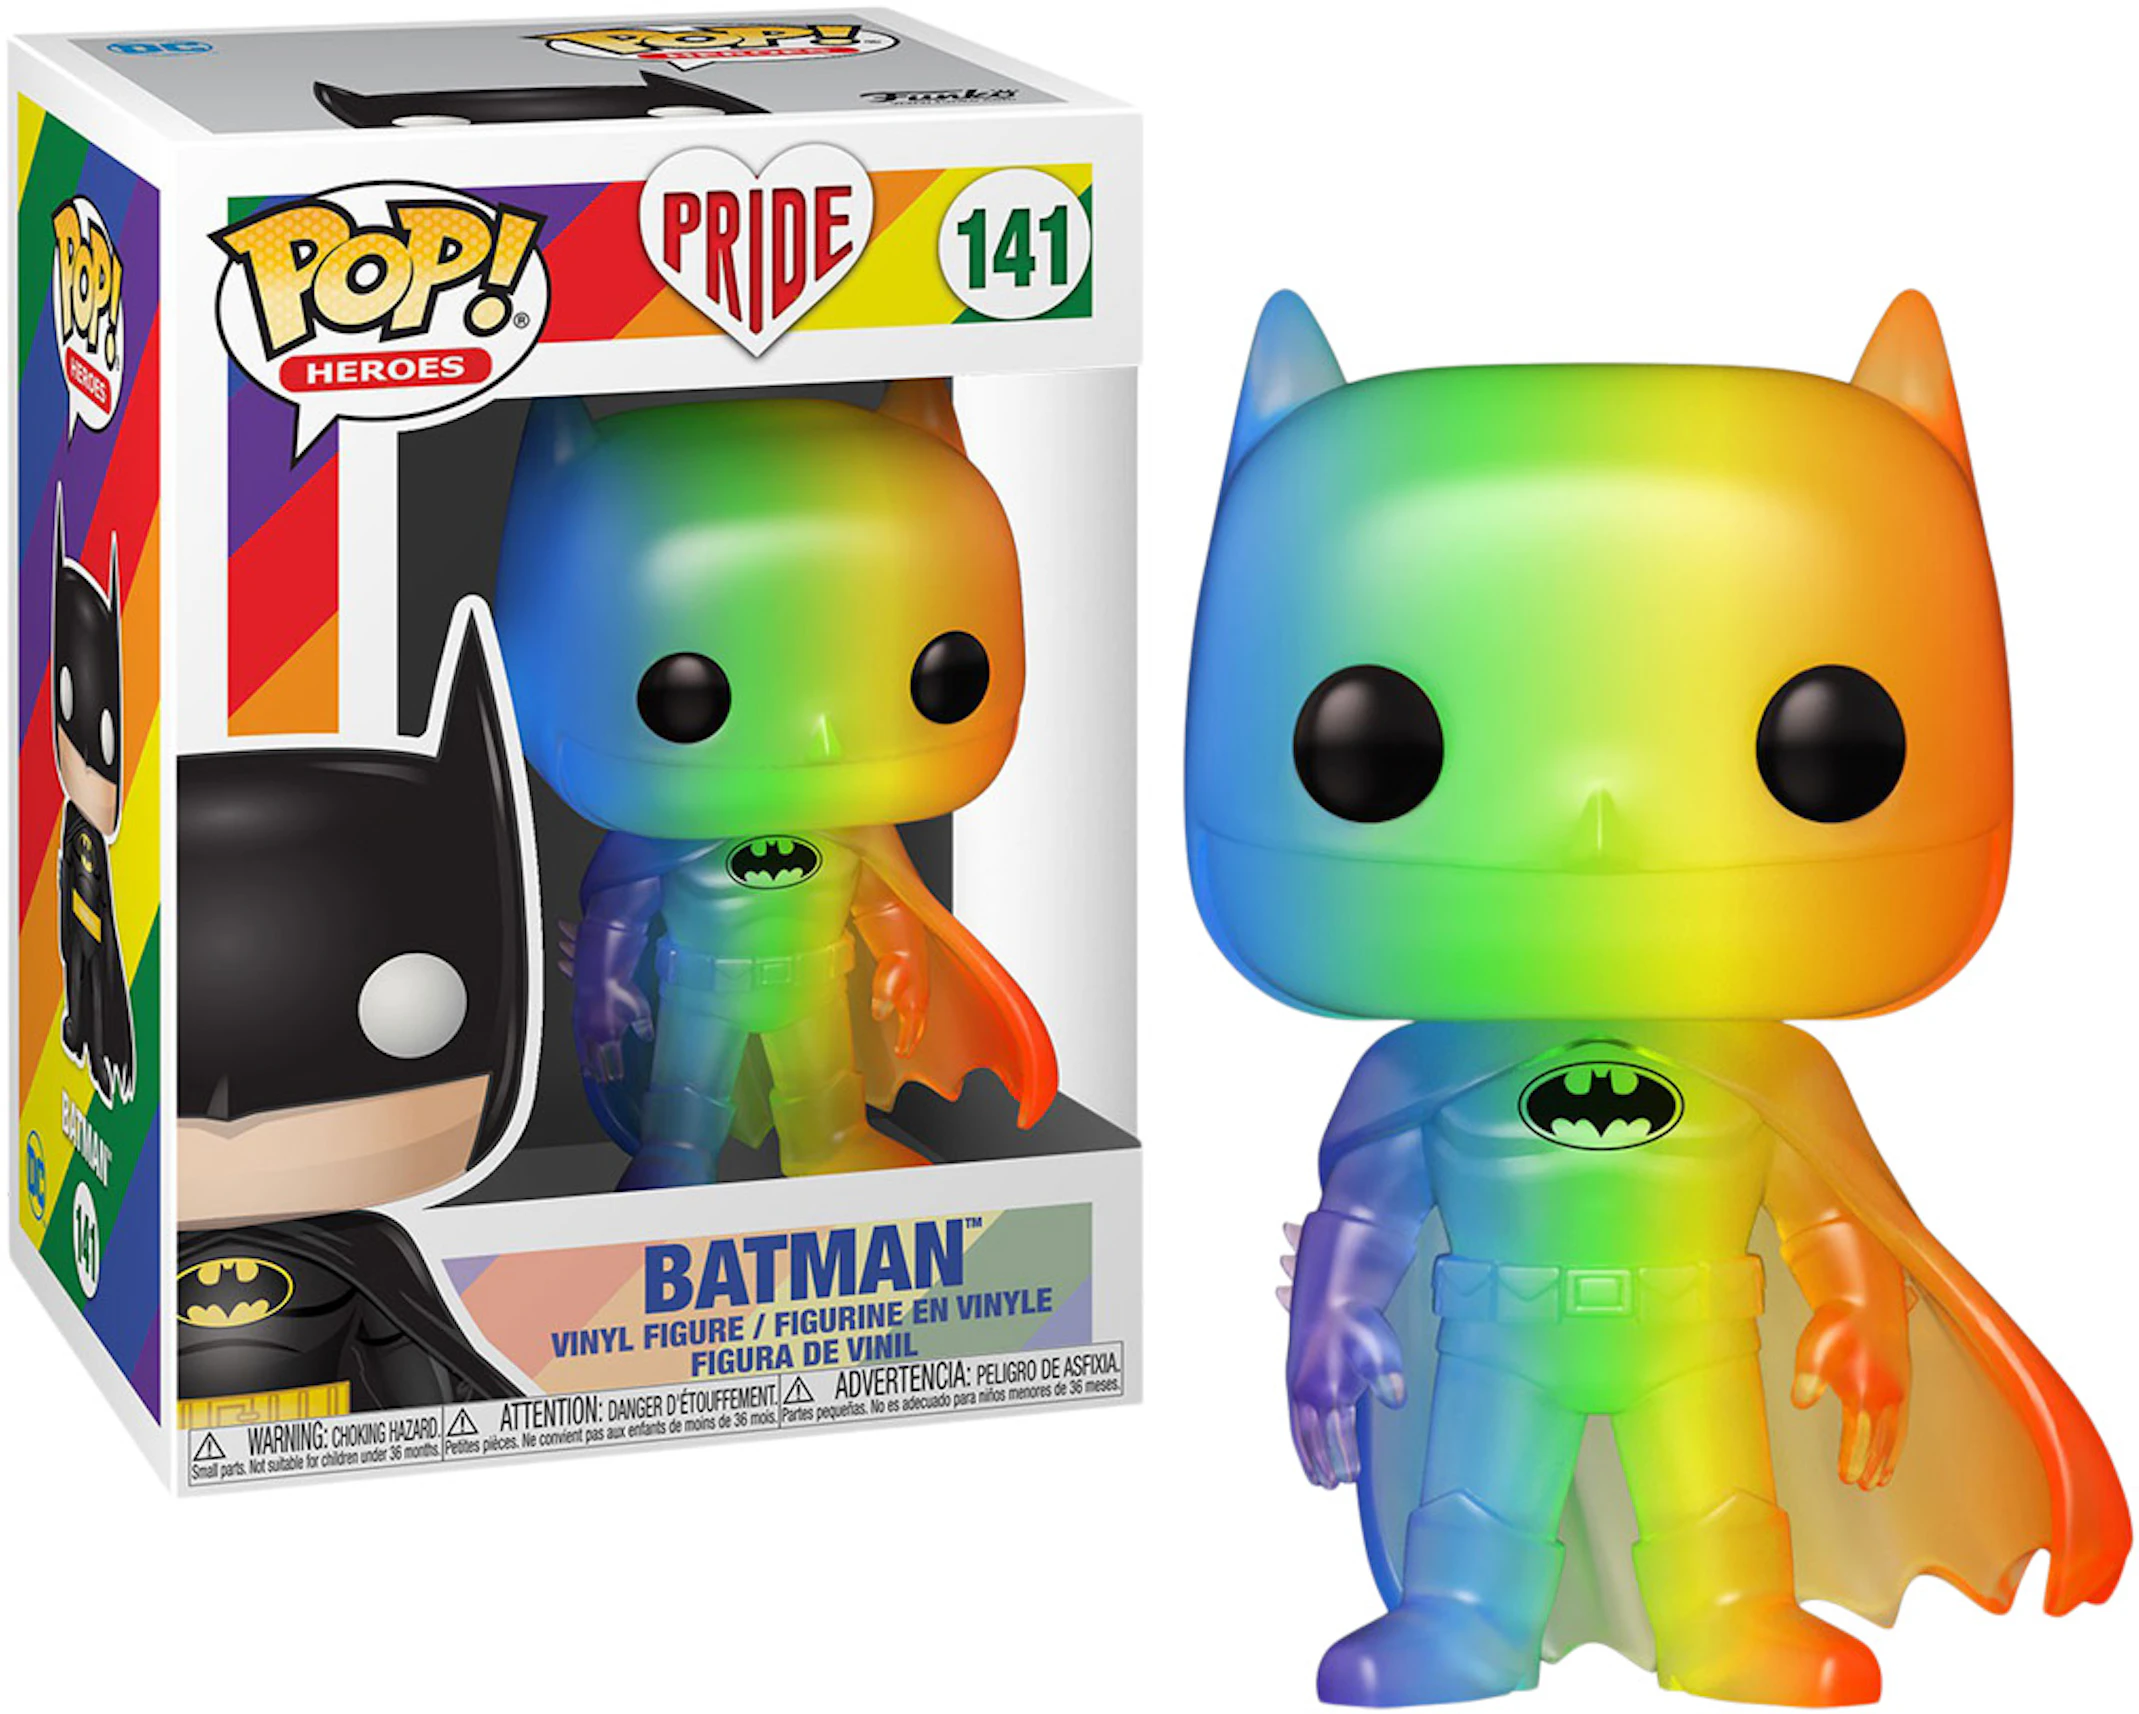 Funko Pop! Heroes Pride 2020 Batman Rainbow Pride Figure #141 - GB